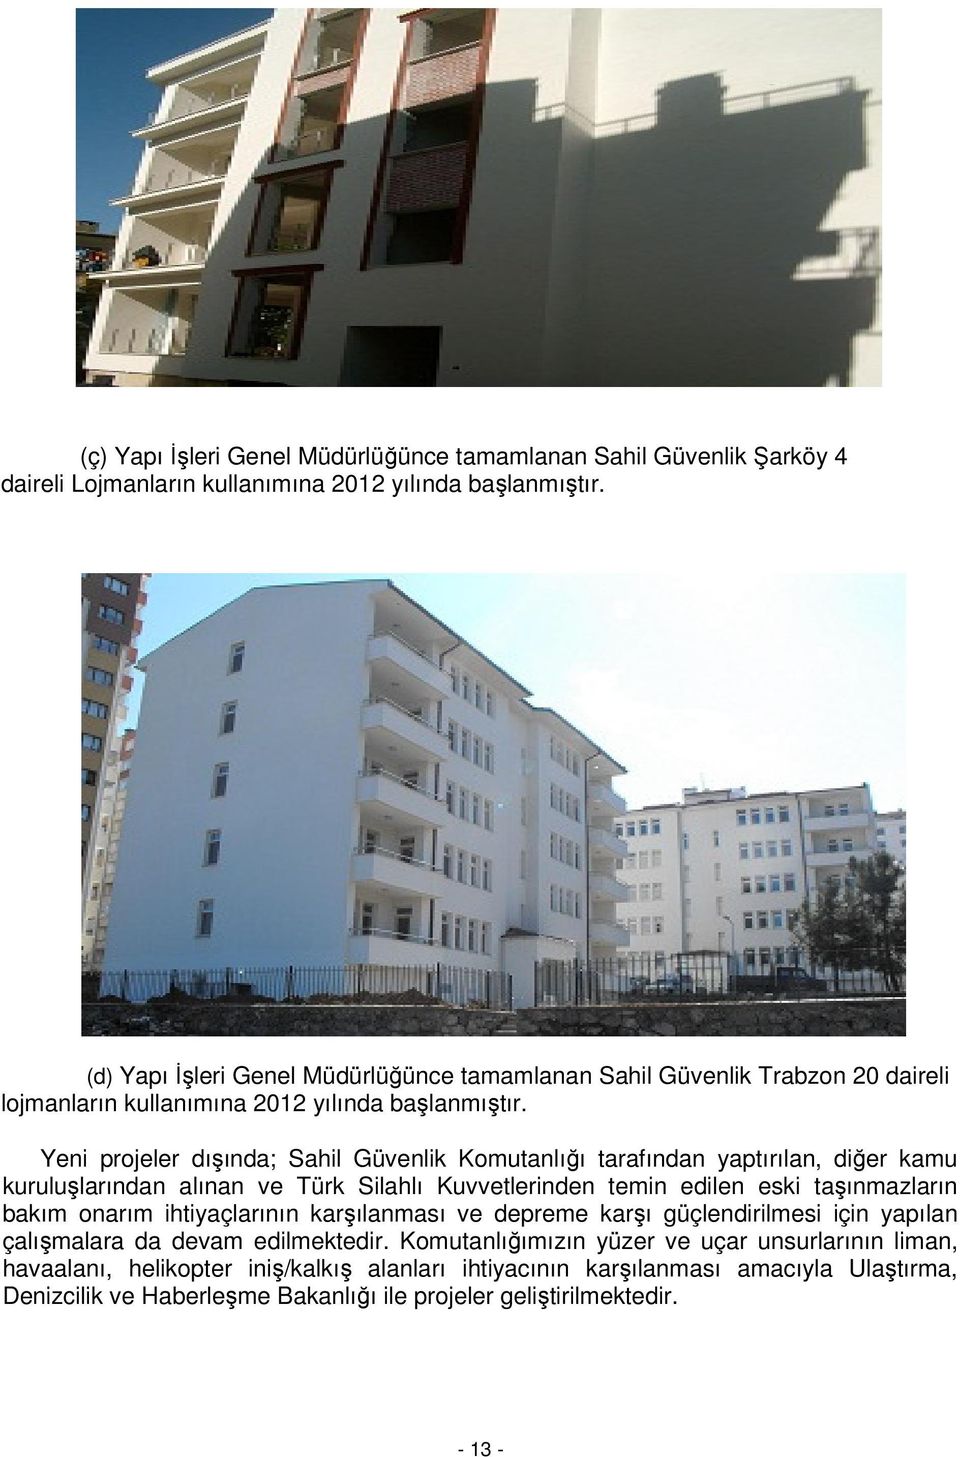 Yeni projeler dışında; Sahil Güvenlik Komutanlığı tarafından yaptırılan, diğer kamu kuruluşlarından alınan ve Türk Silahlı Kuvvetlerinden temin edilen eski taşınmazların bakım onarım